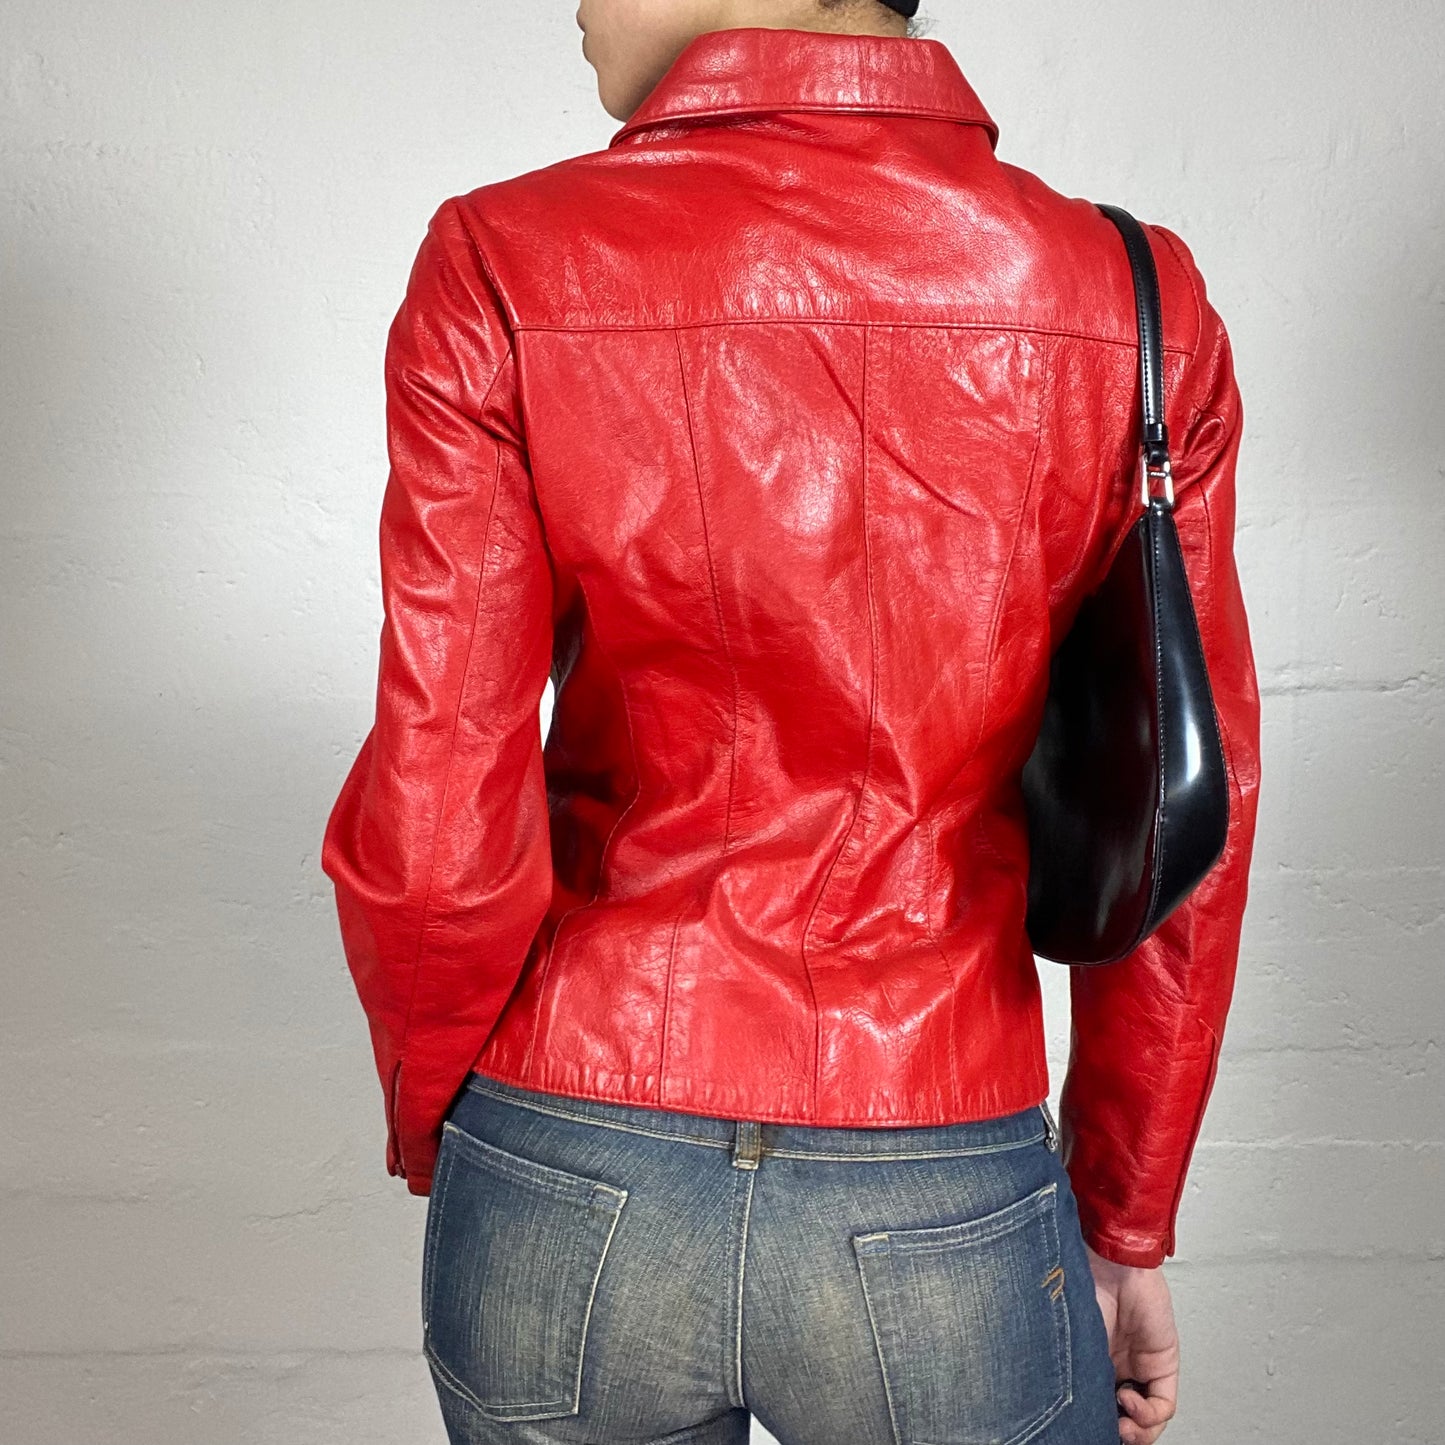 Vintage 2000's Femme Fatale Blood Red Leather Zip Up Jacket (S)